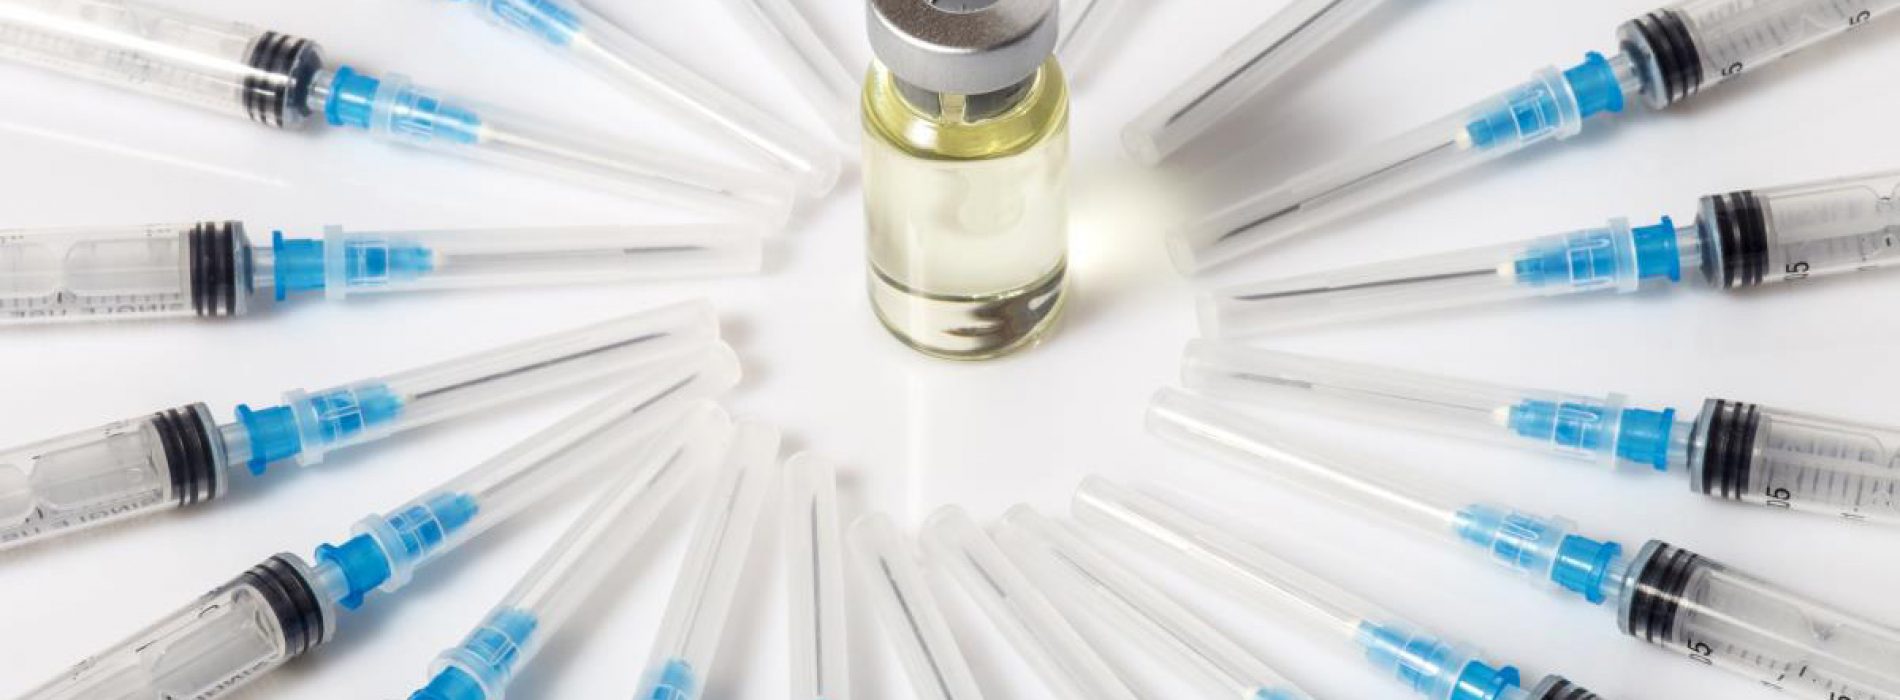 Big Pharma-bedrijven controleren de goedkeuring van COVID-19-vaccins door artsen in veiligheidsraden te hebben – rapport